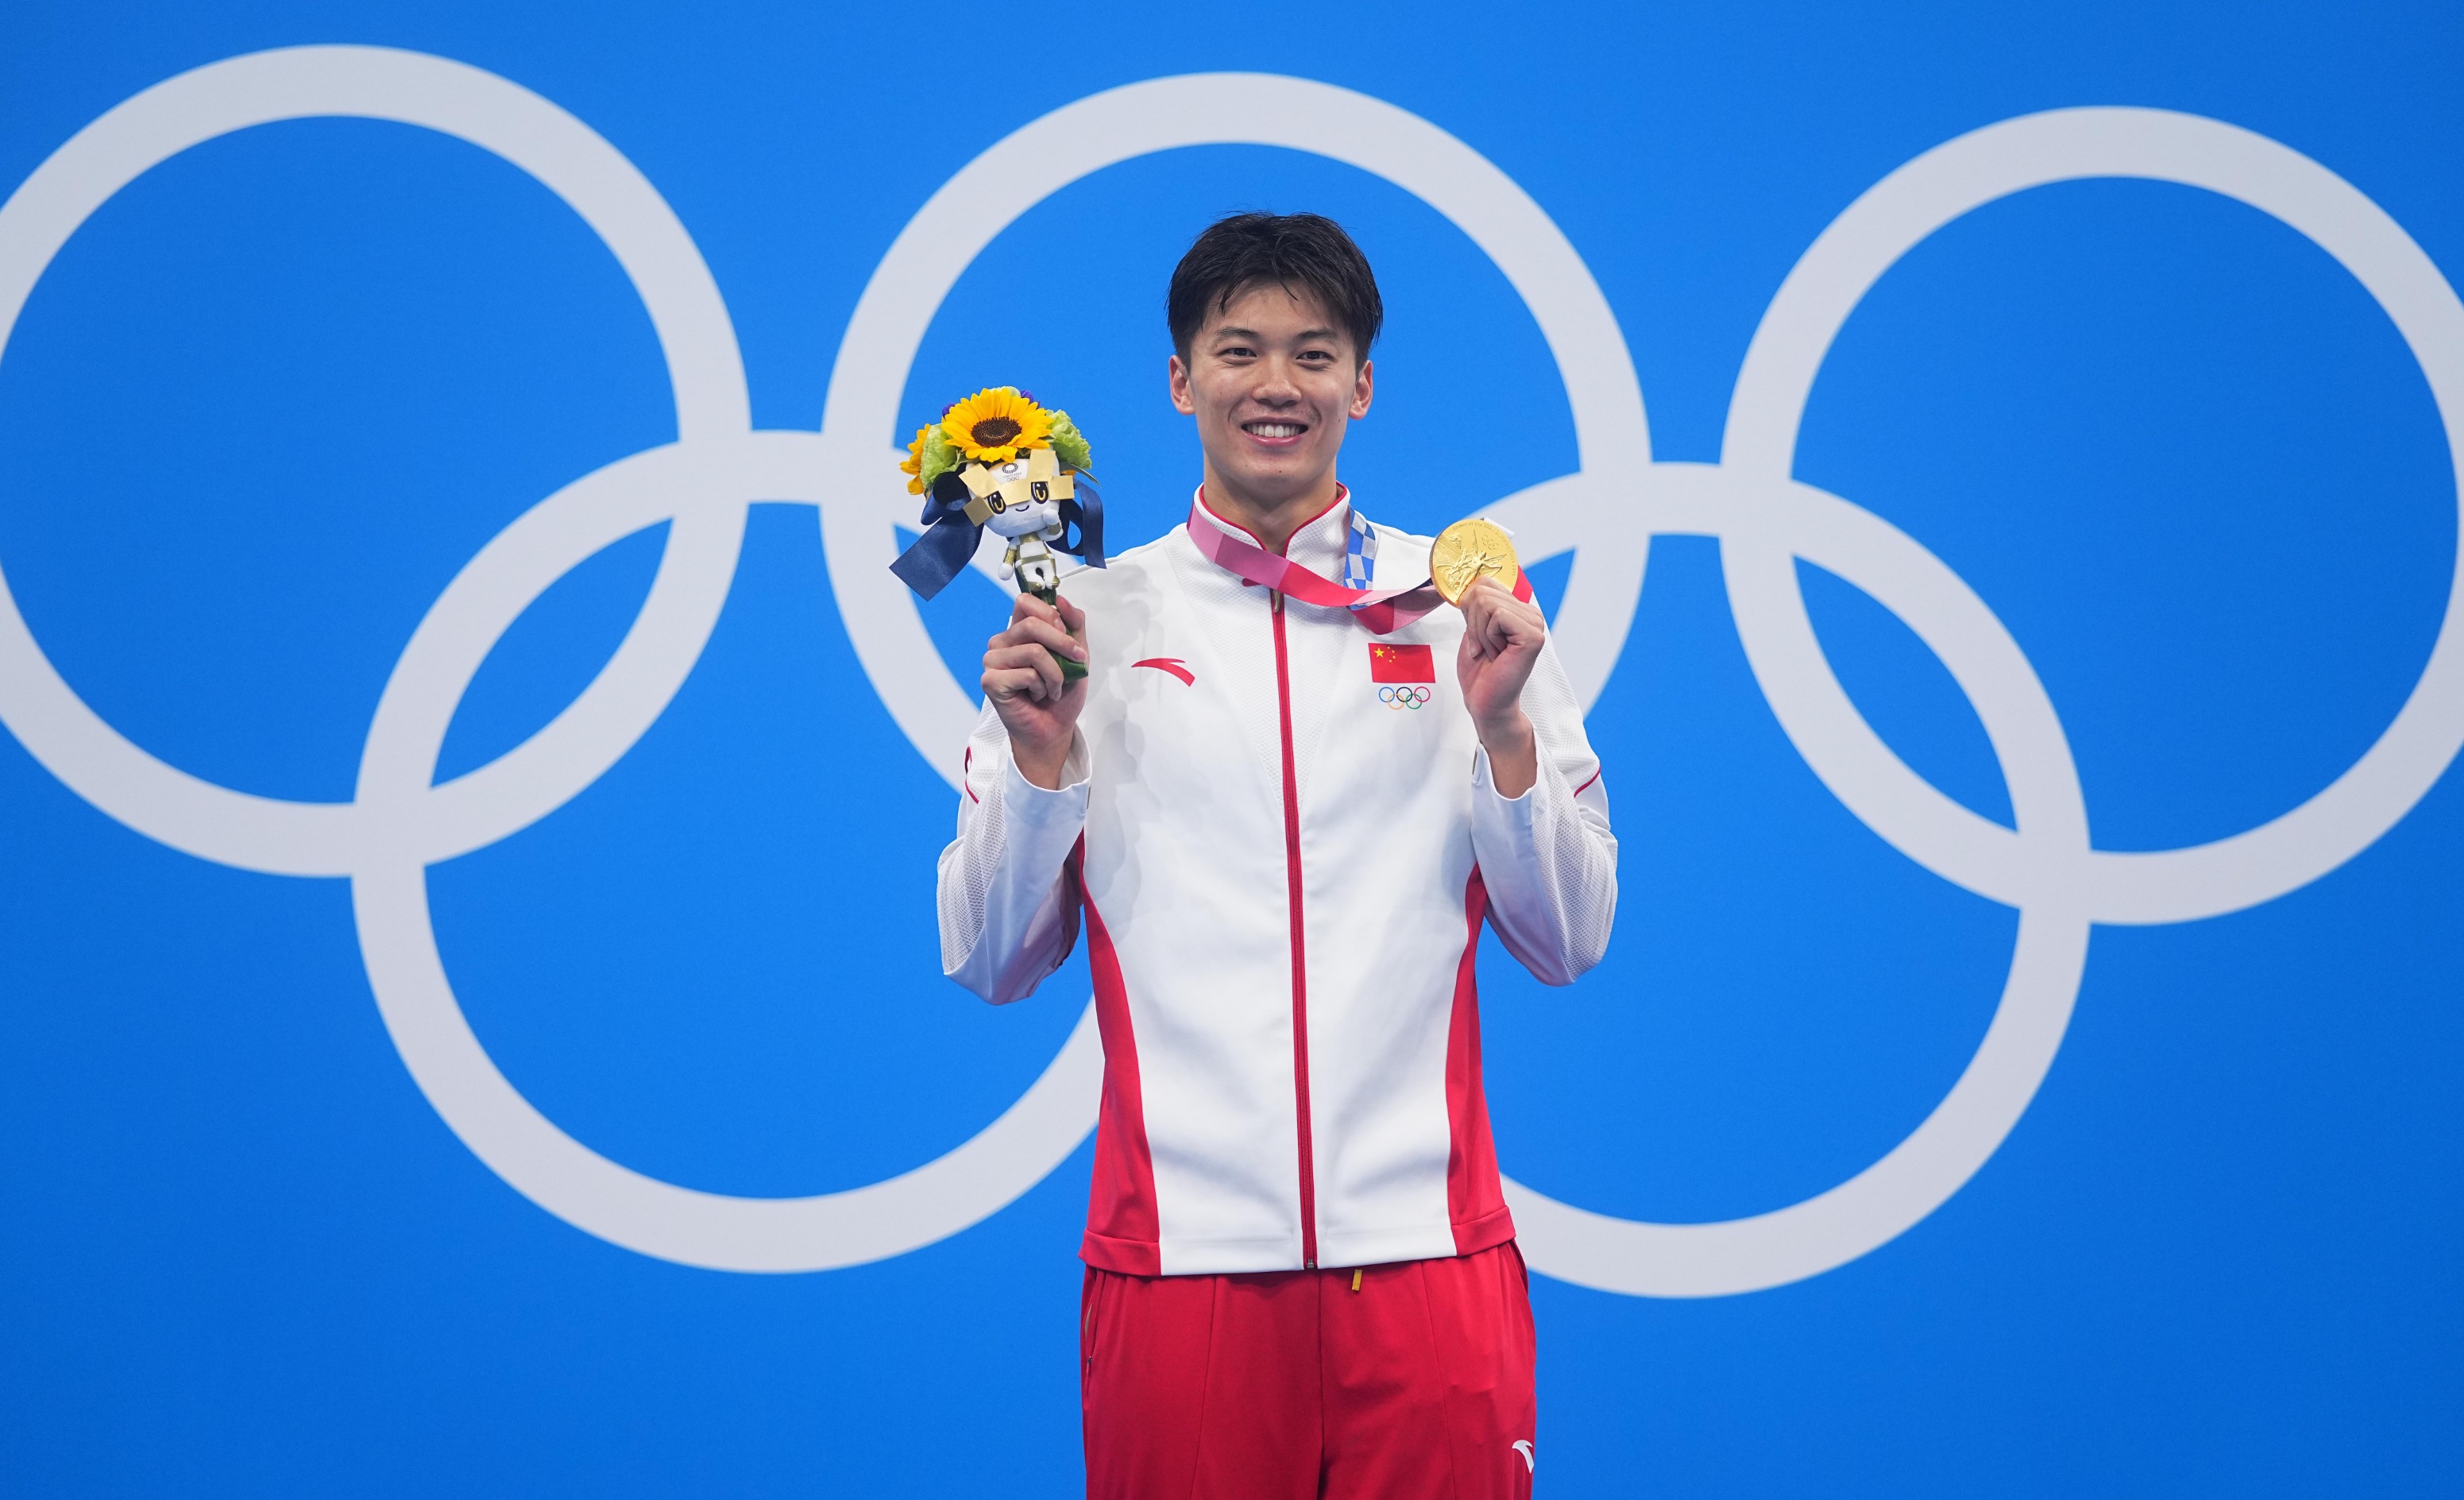 加油!中国游泳队全力出击布达佩斯世锦赛